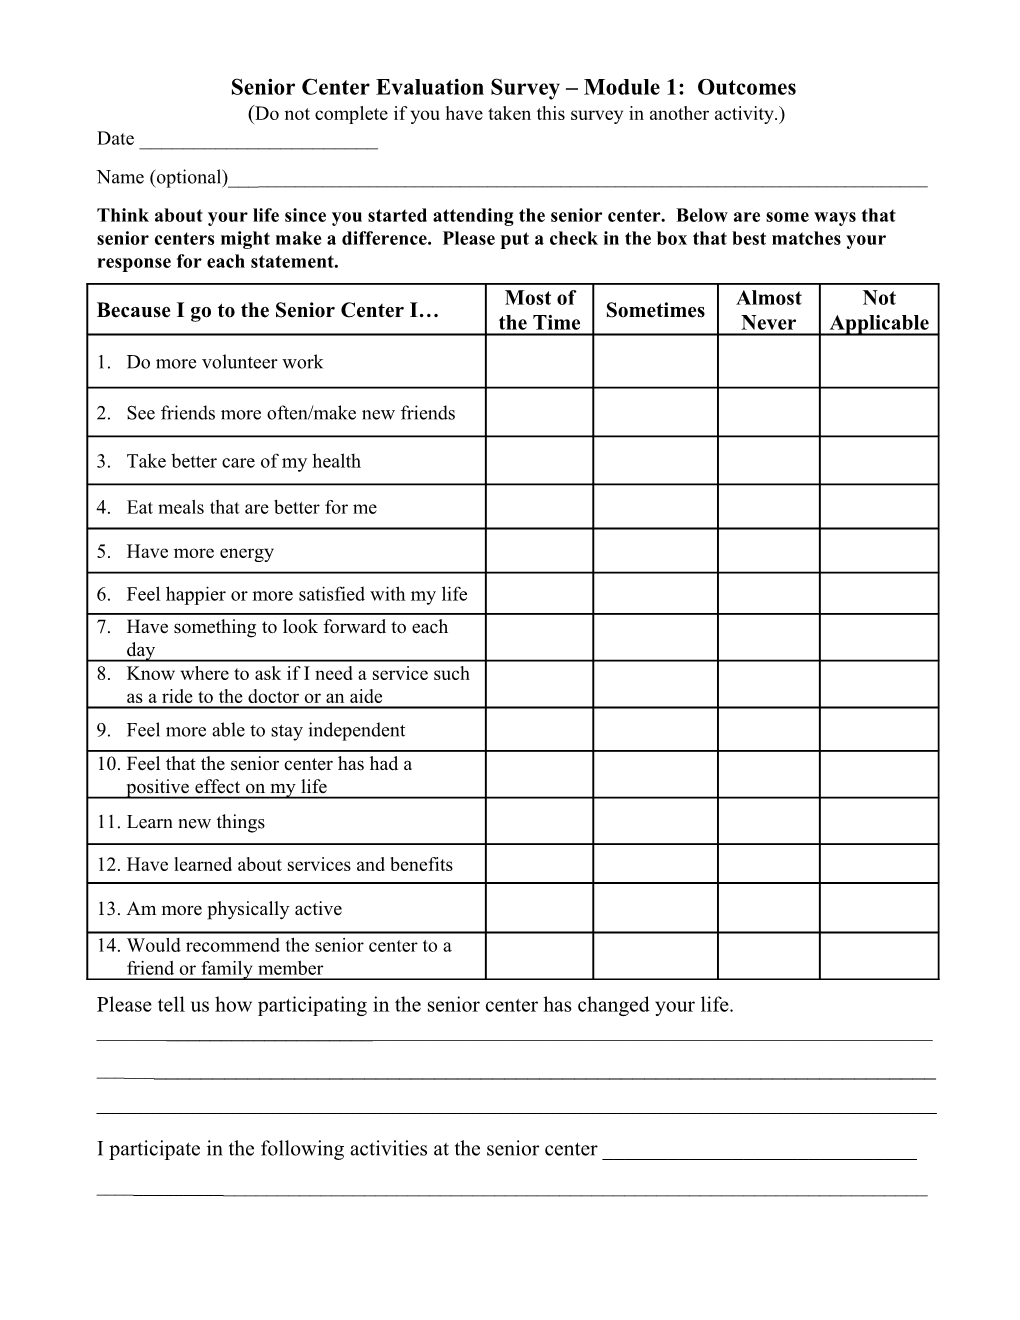 Senior Center Evaluation Survey Module 1: Outcomes